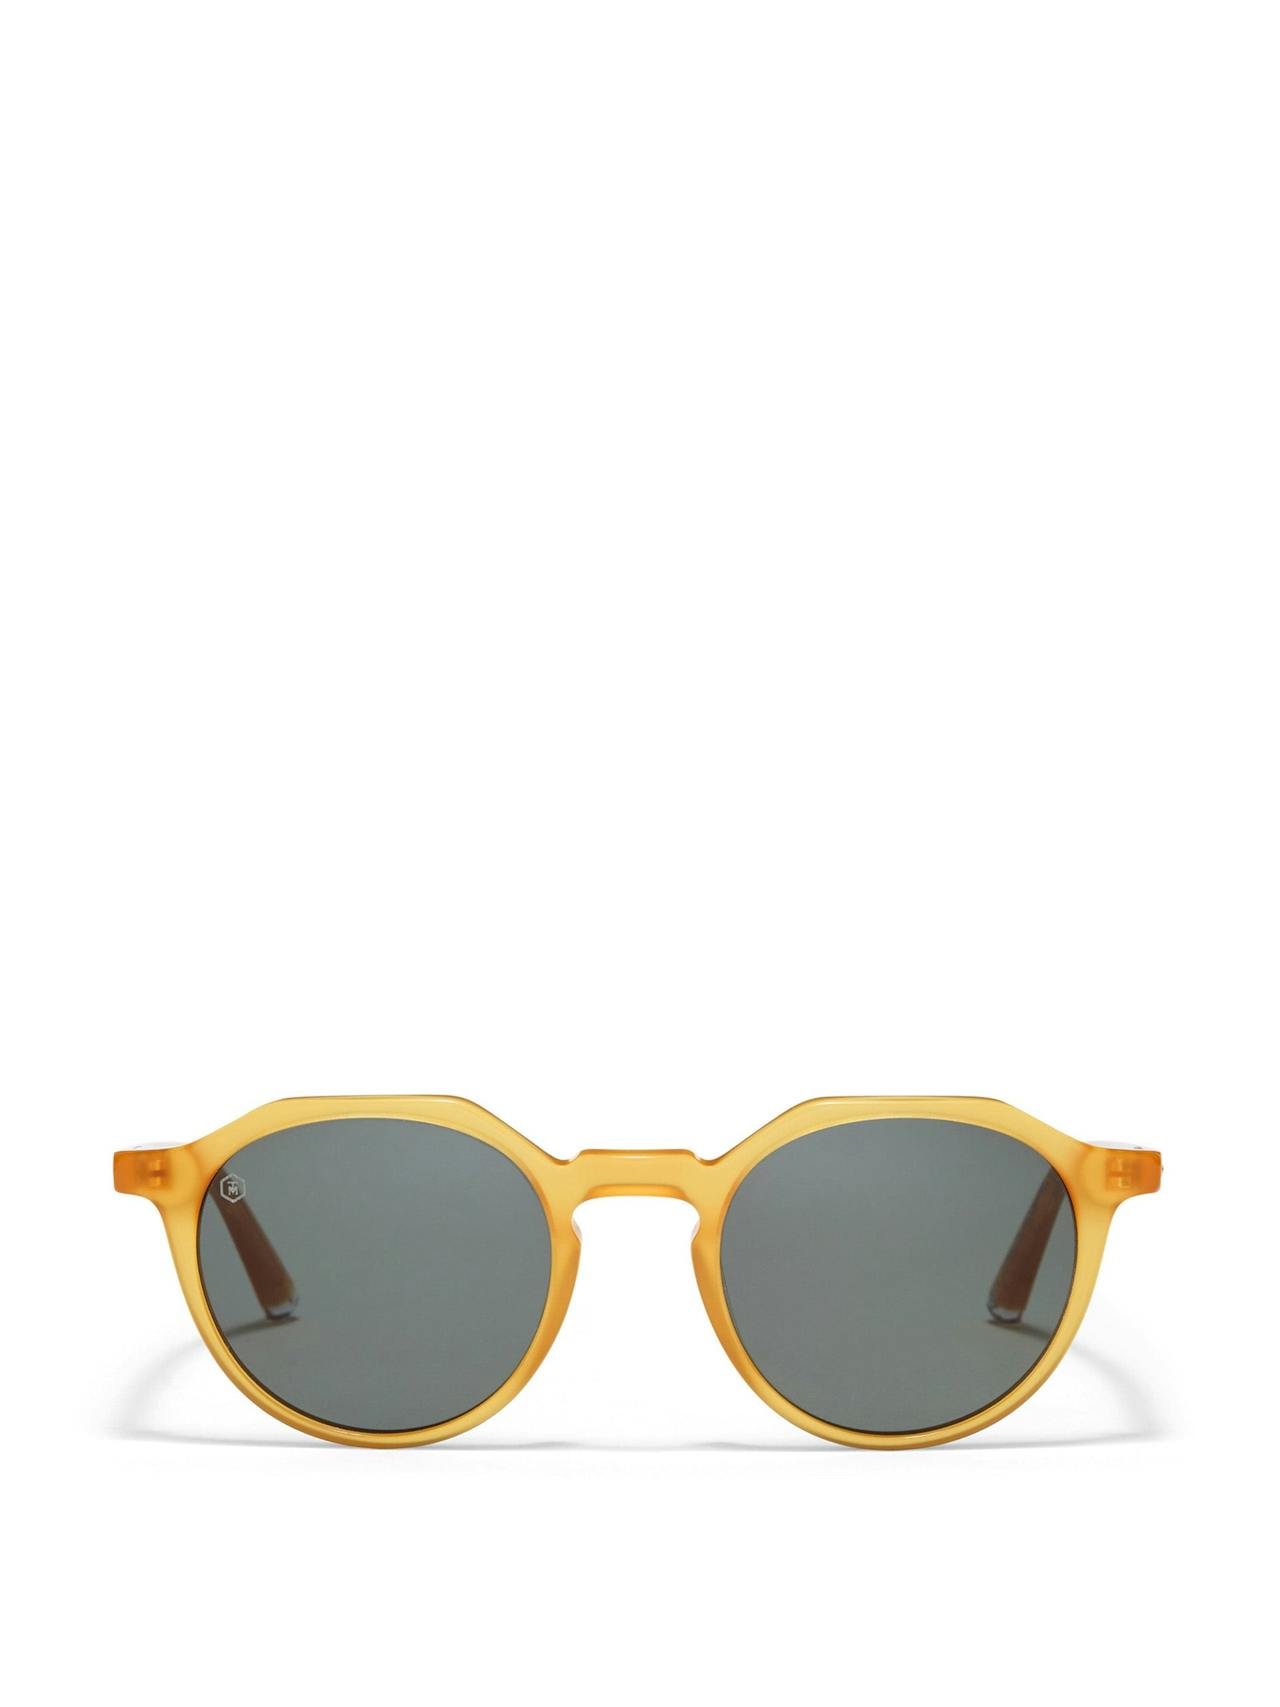 Oxford sunglasses